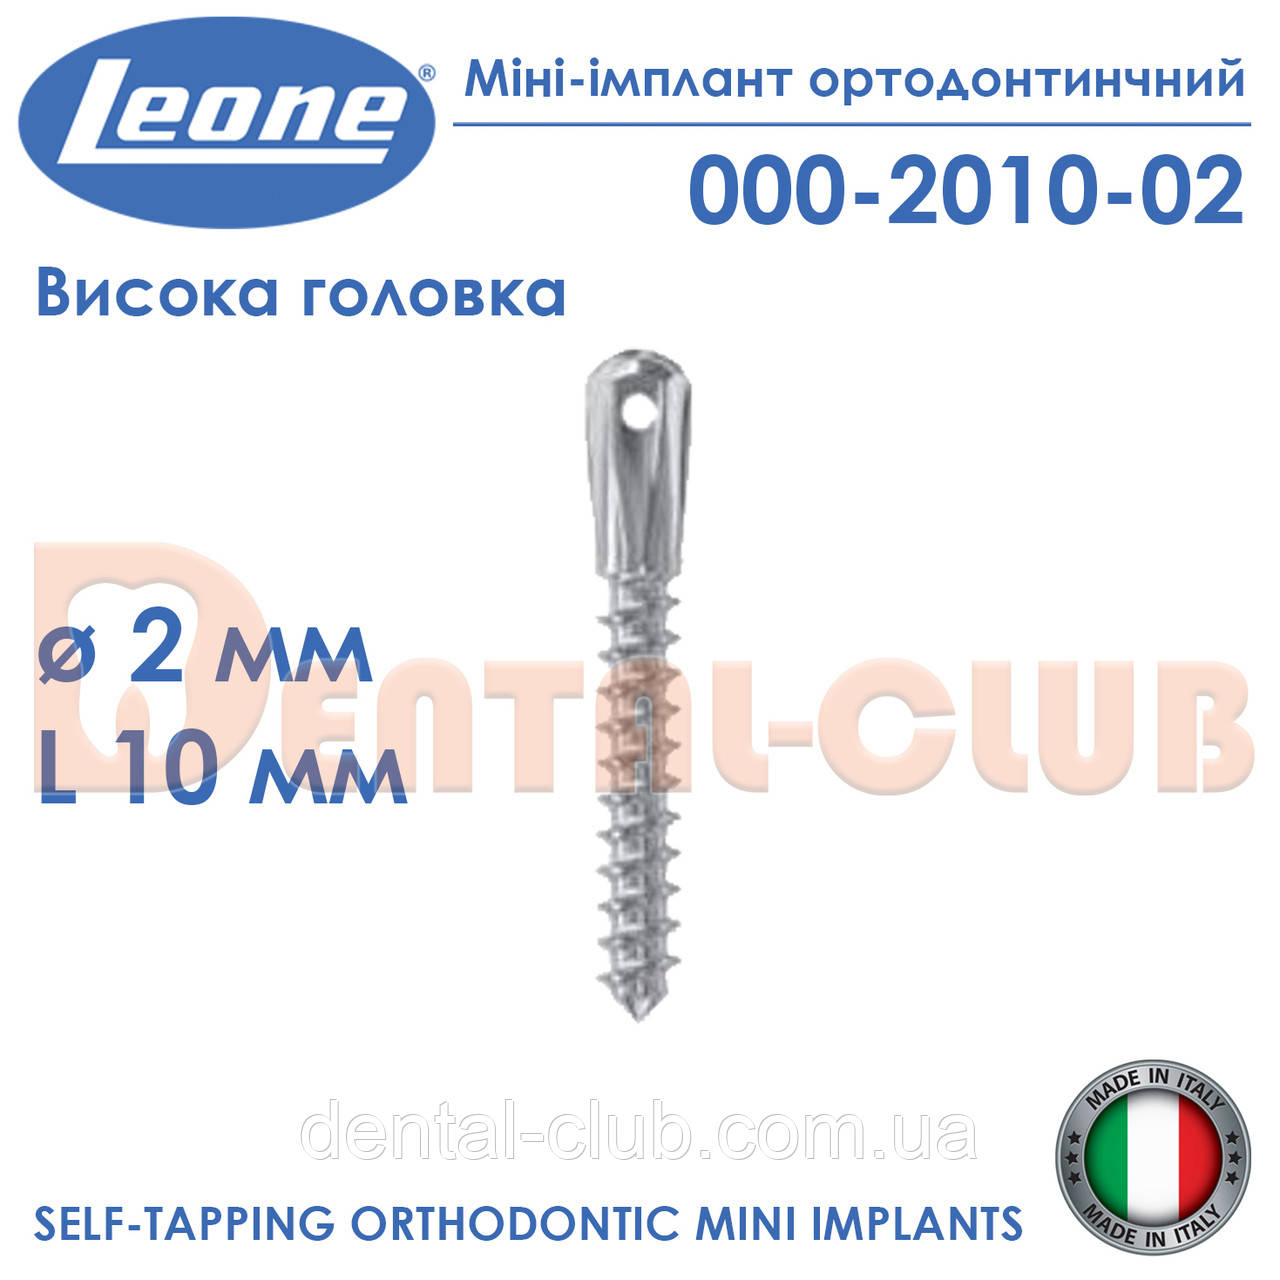 Міні-імплант ортодонтичний з високою голівкою, діаметр 2 мм, довжина 10 мм, Leone (Леоне) 000-2010-02